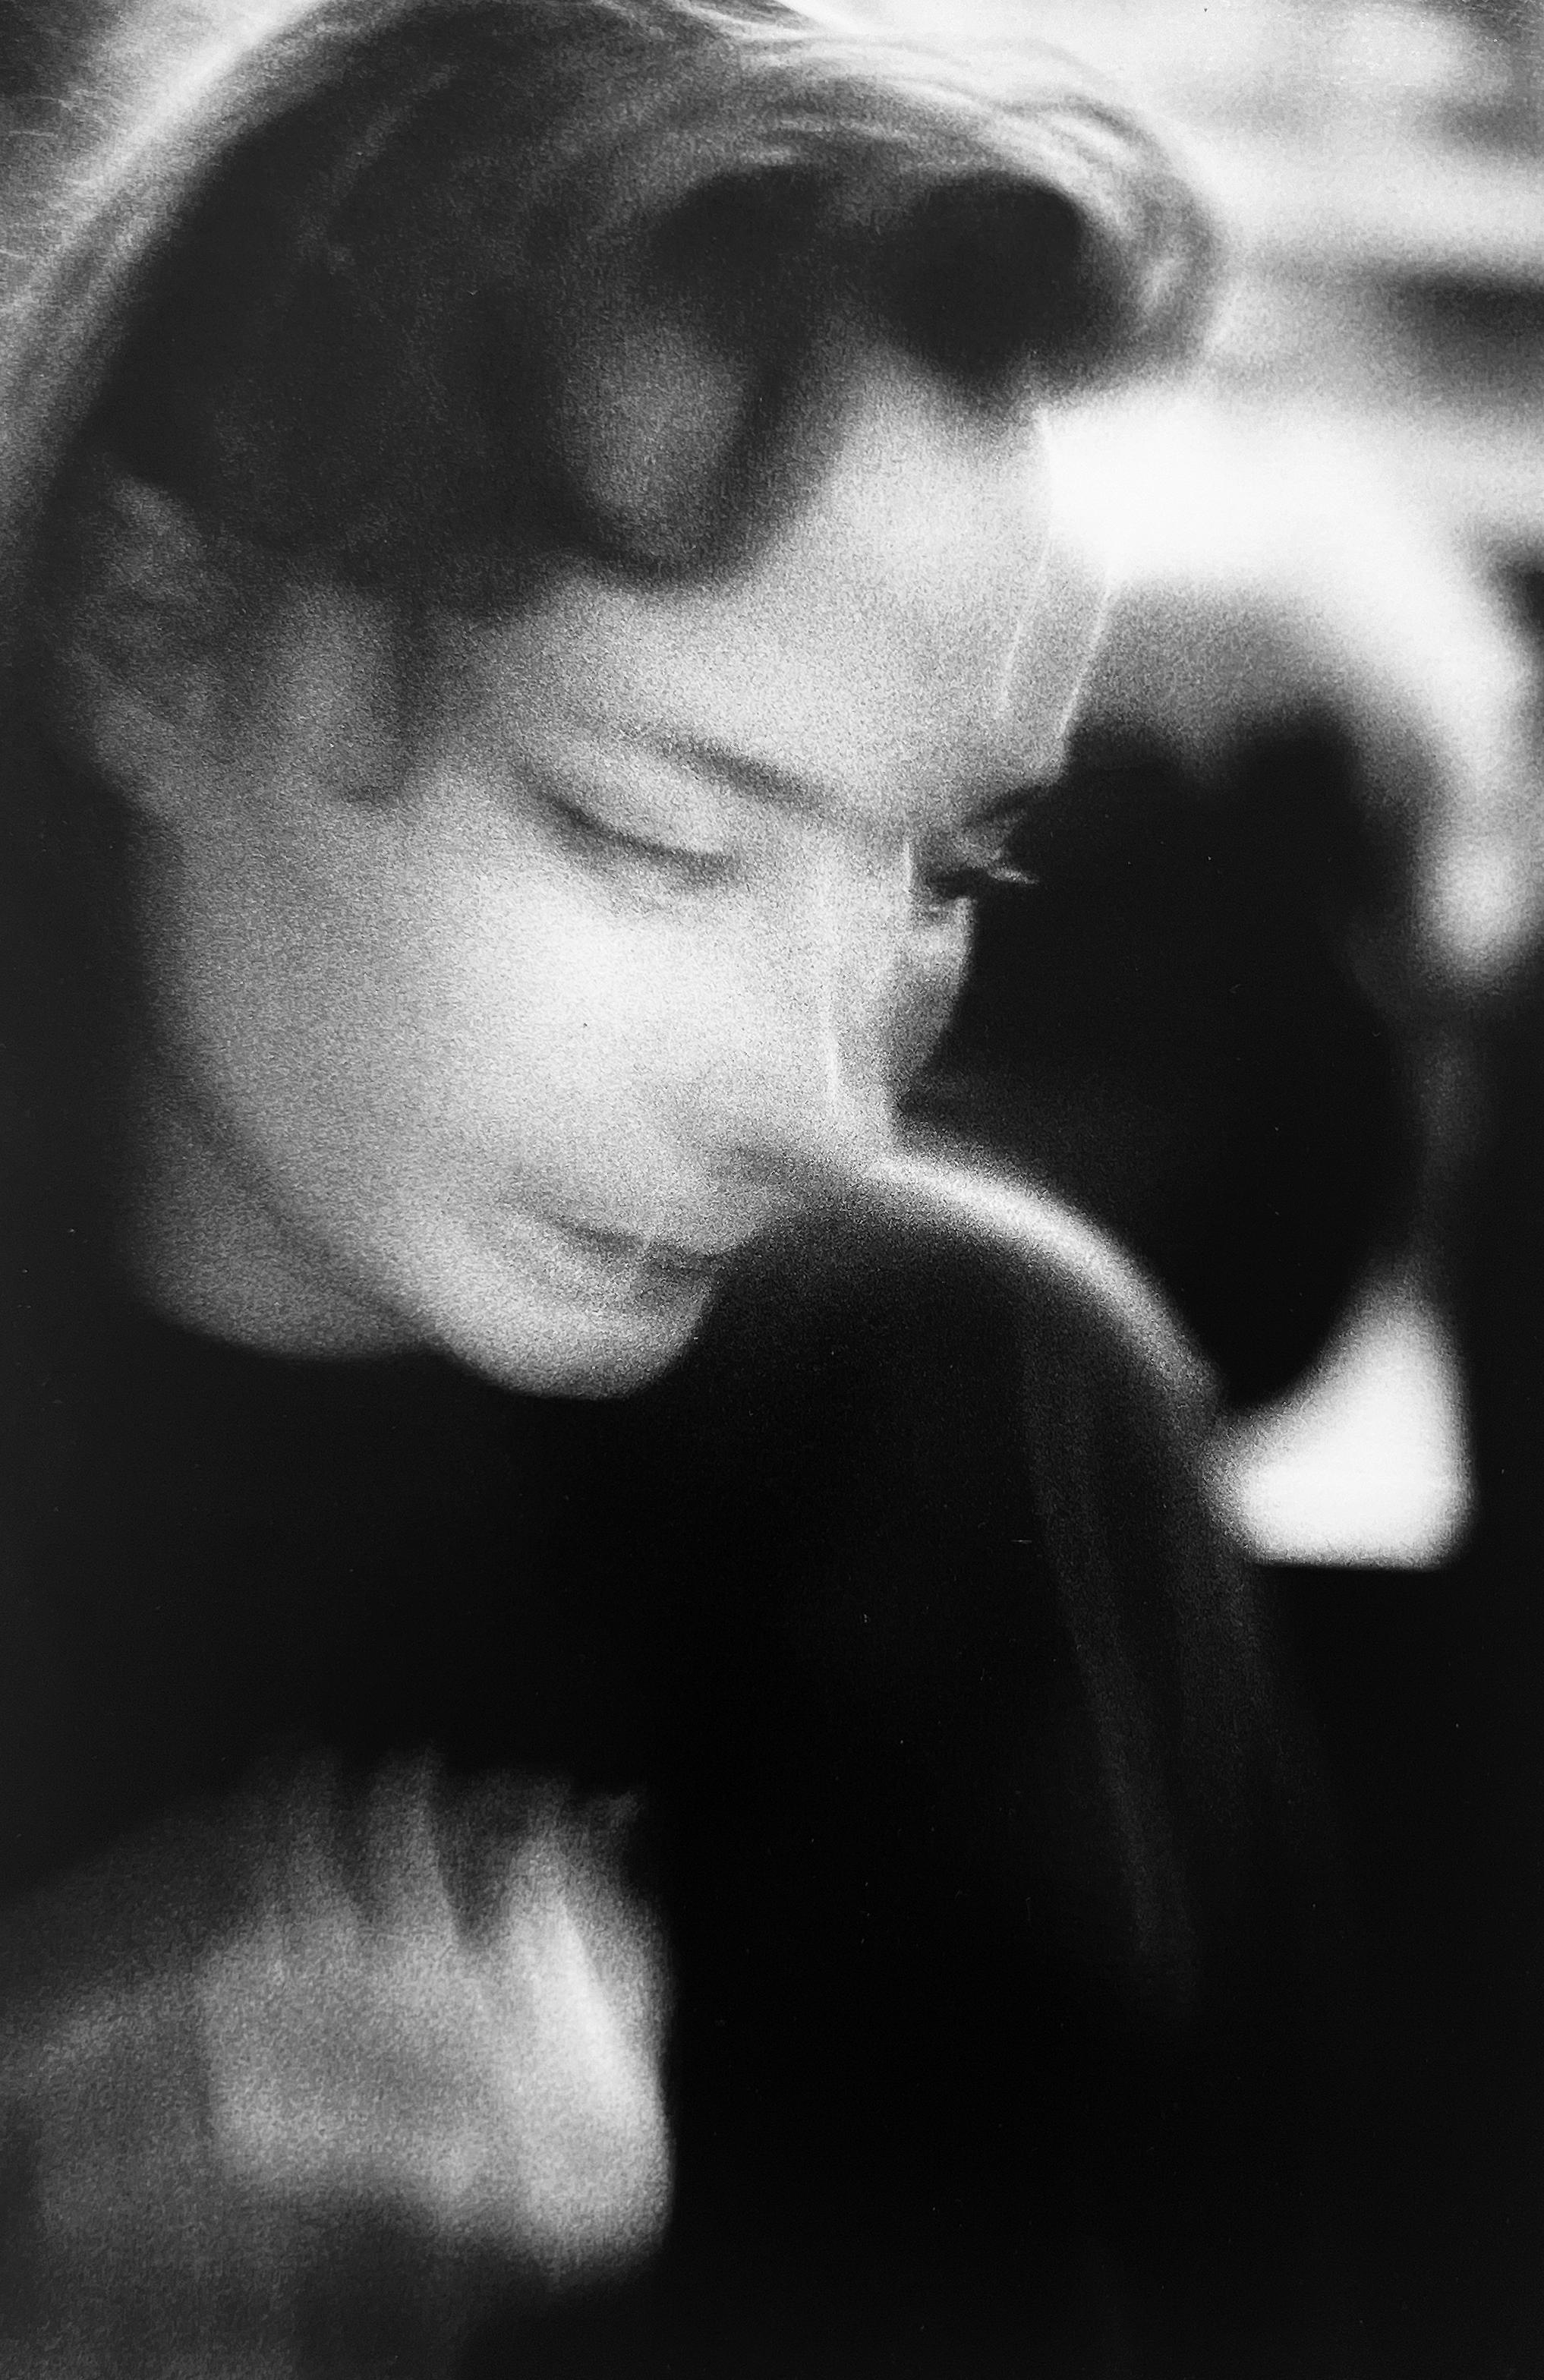 Heartbreak, Schwarz-Weiß-Figurative Fotografie der 1990er Jahre in Paris, Frankreich (Zeitgenössisch), Photograph, von Roberta Fineberg